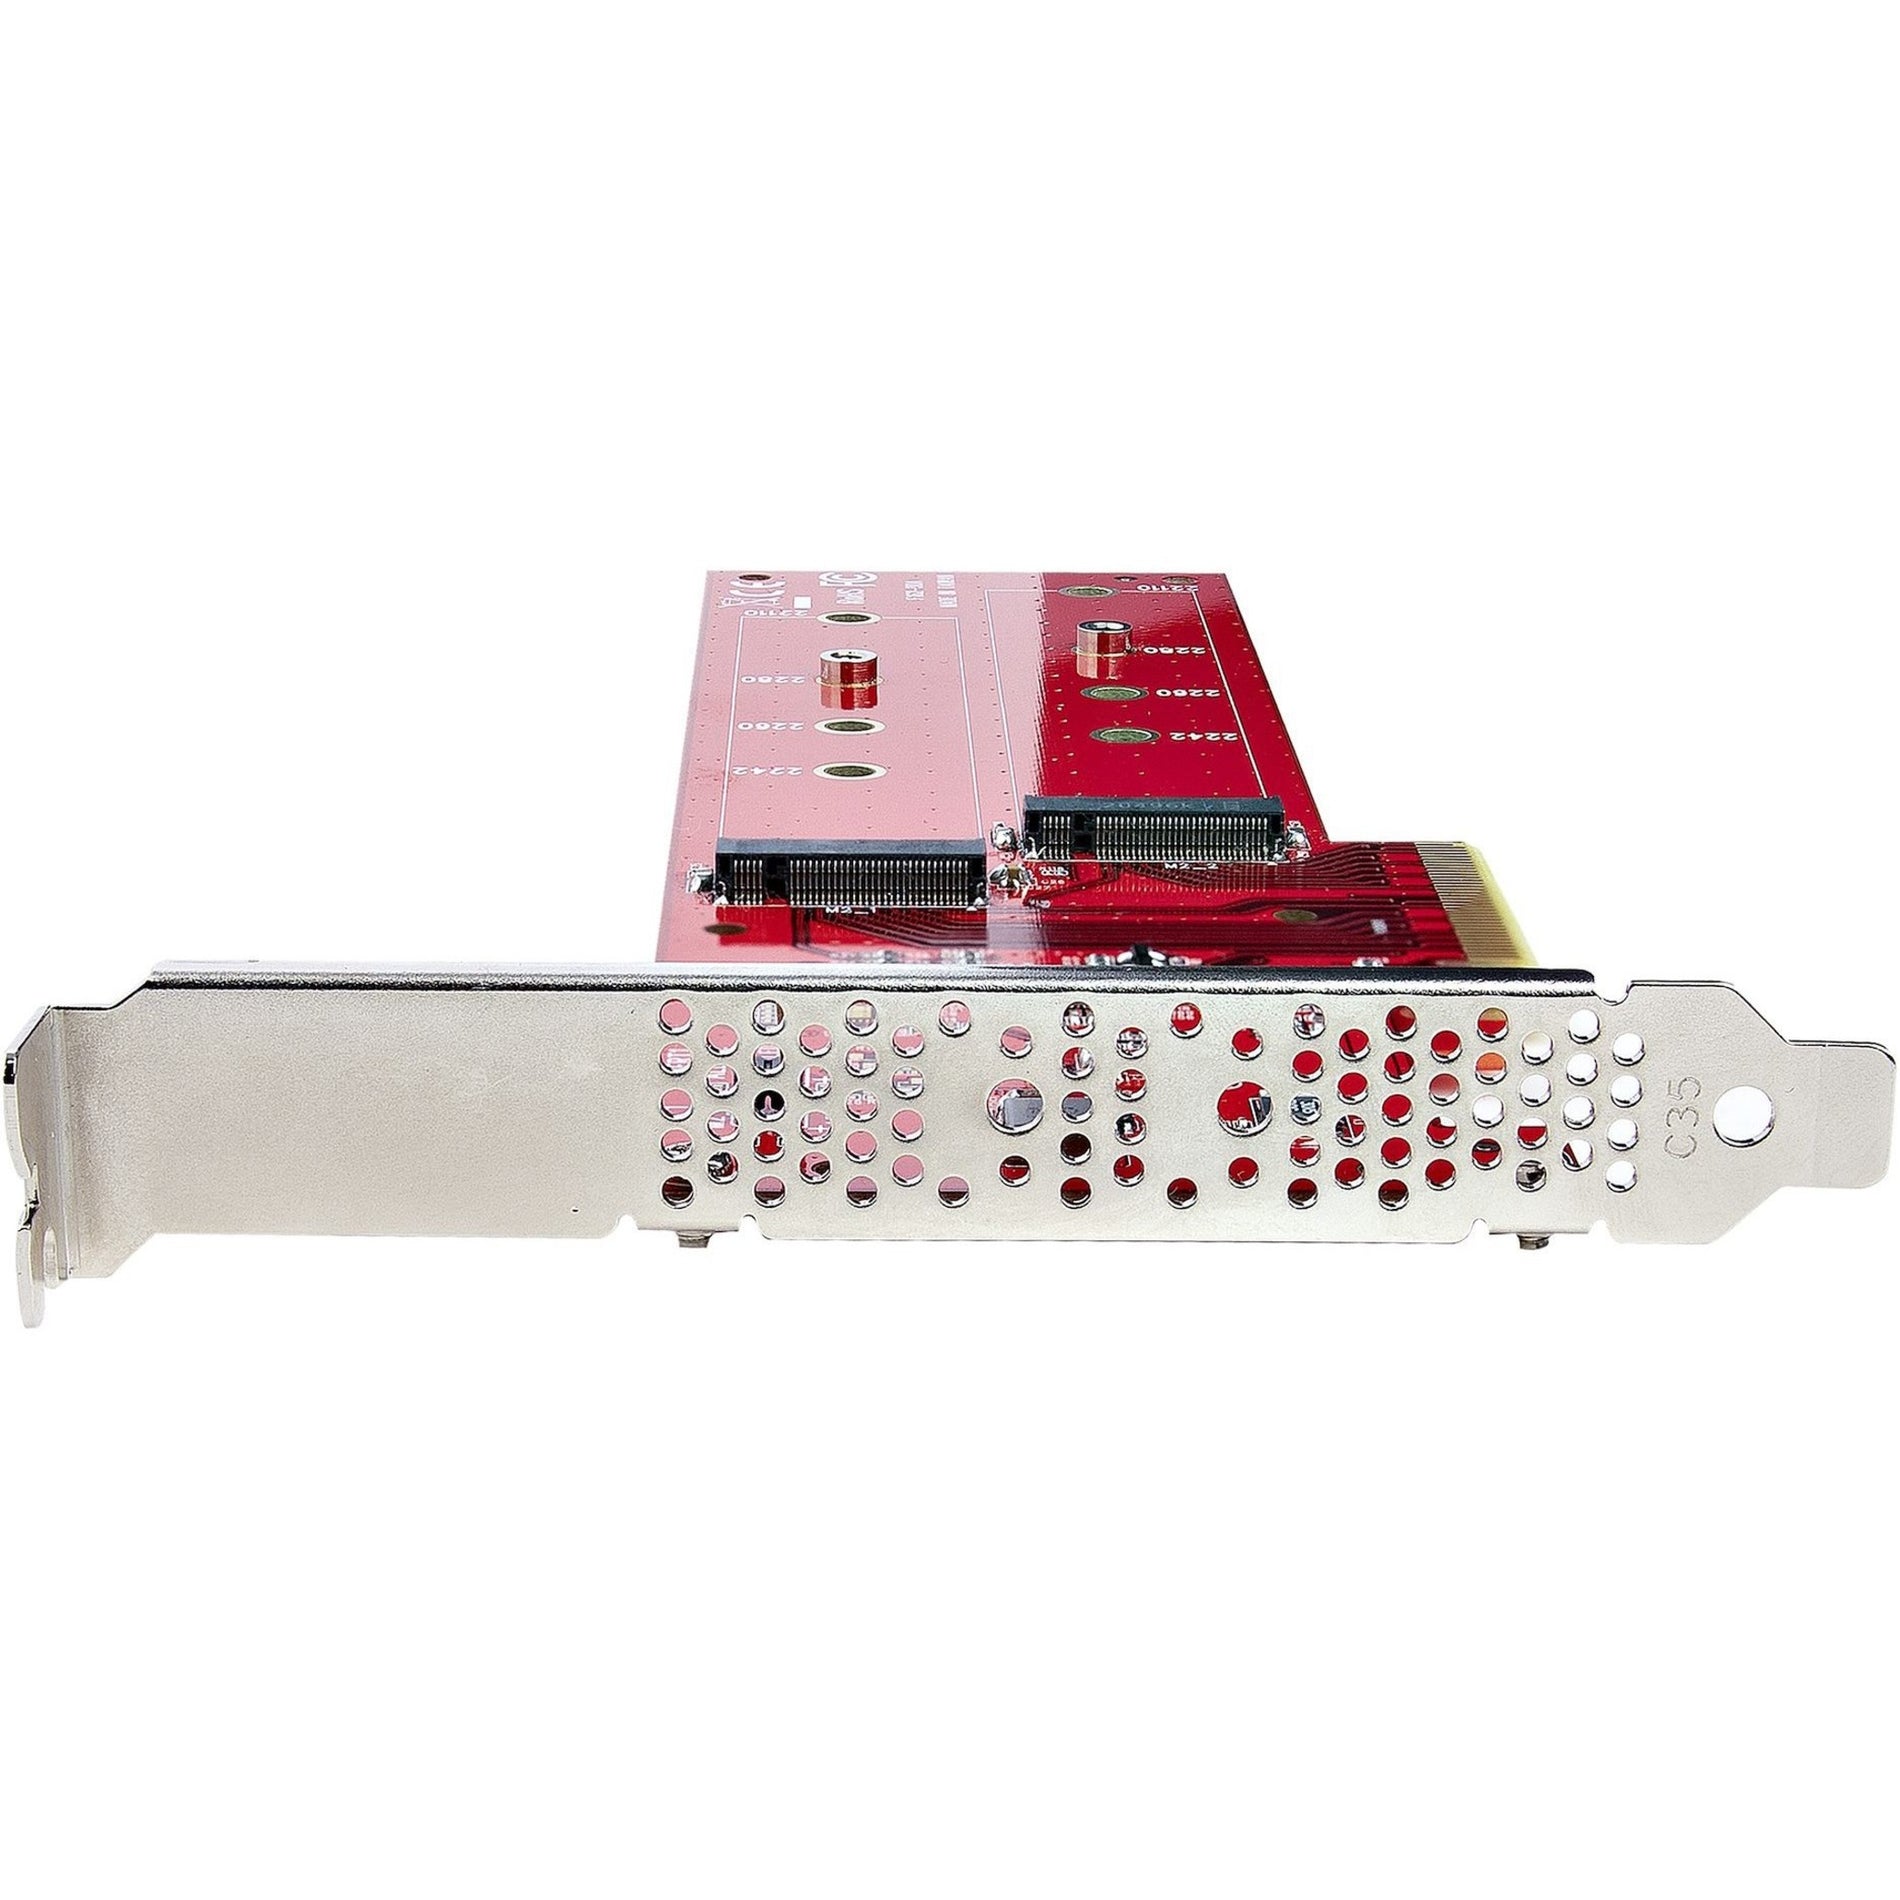 StarTech.com DUAL-M2-PCIE-CARD-B PCIe zu M.2 Adapterkarte Dual NVMe oder AHCI M.2 SSD zu PCI Express 4.0 Bis zu 78 GB/s/Antrieb Bifurkation erforderlich